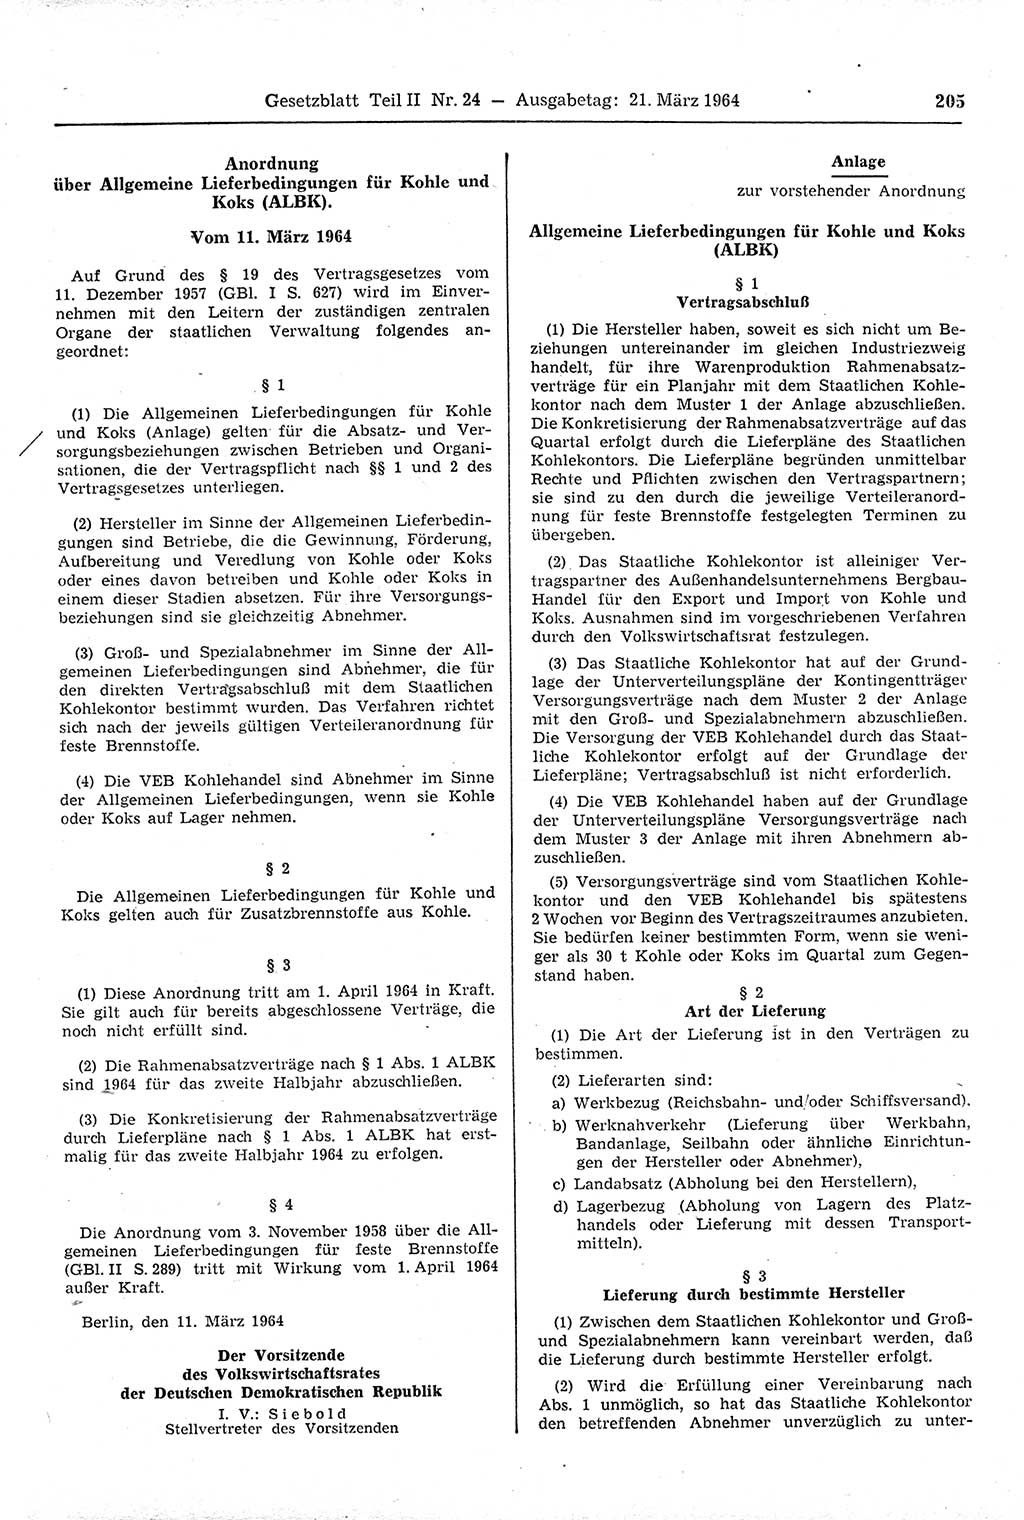 Gesetzblatt (GBl.) der Deutschen Demokratischen Republik (DDR) Teil ⅠⅠ 1964, Seite 205 (GBl. DDR ⅠⅠ 1964, S. 205)